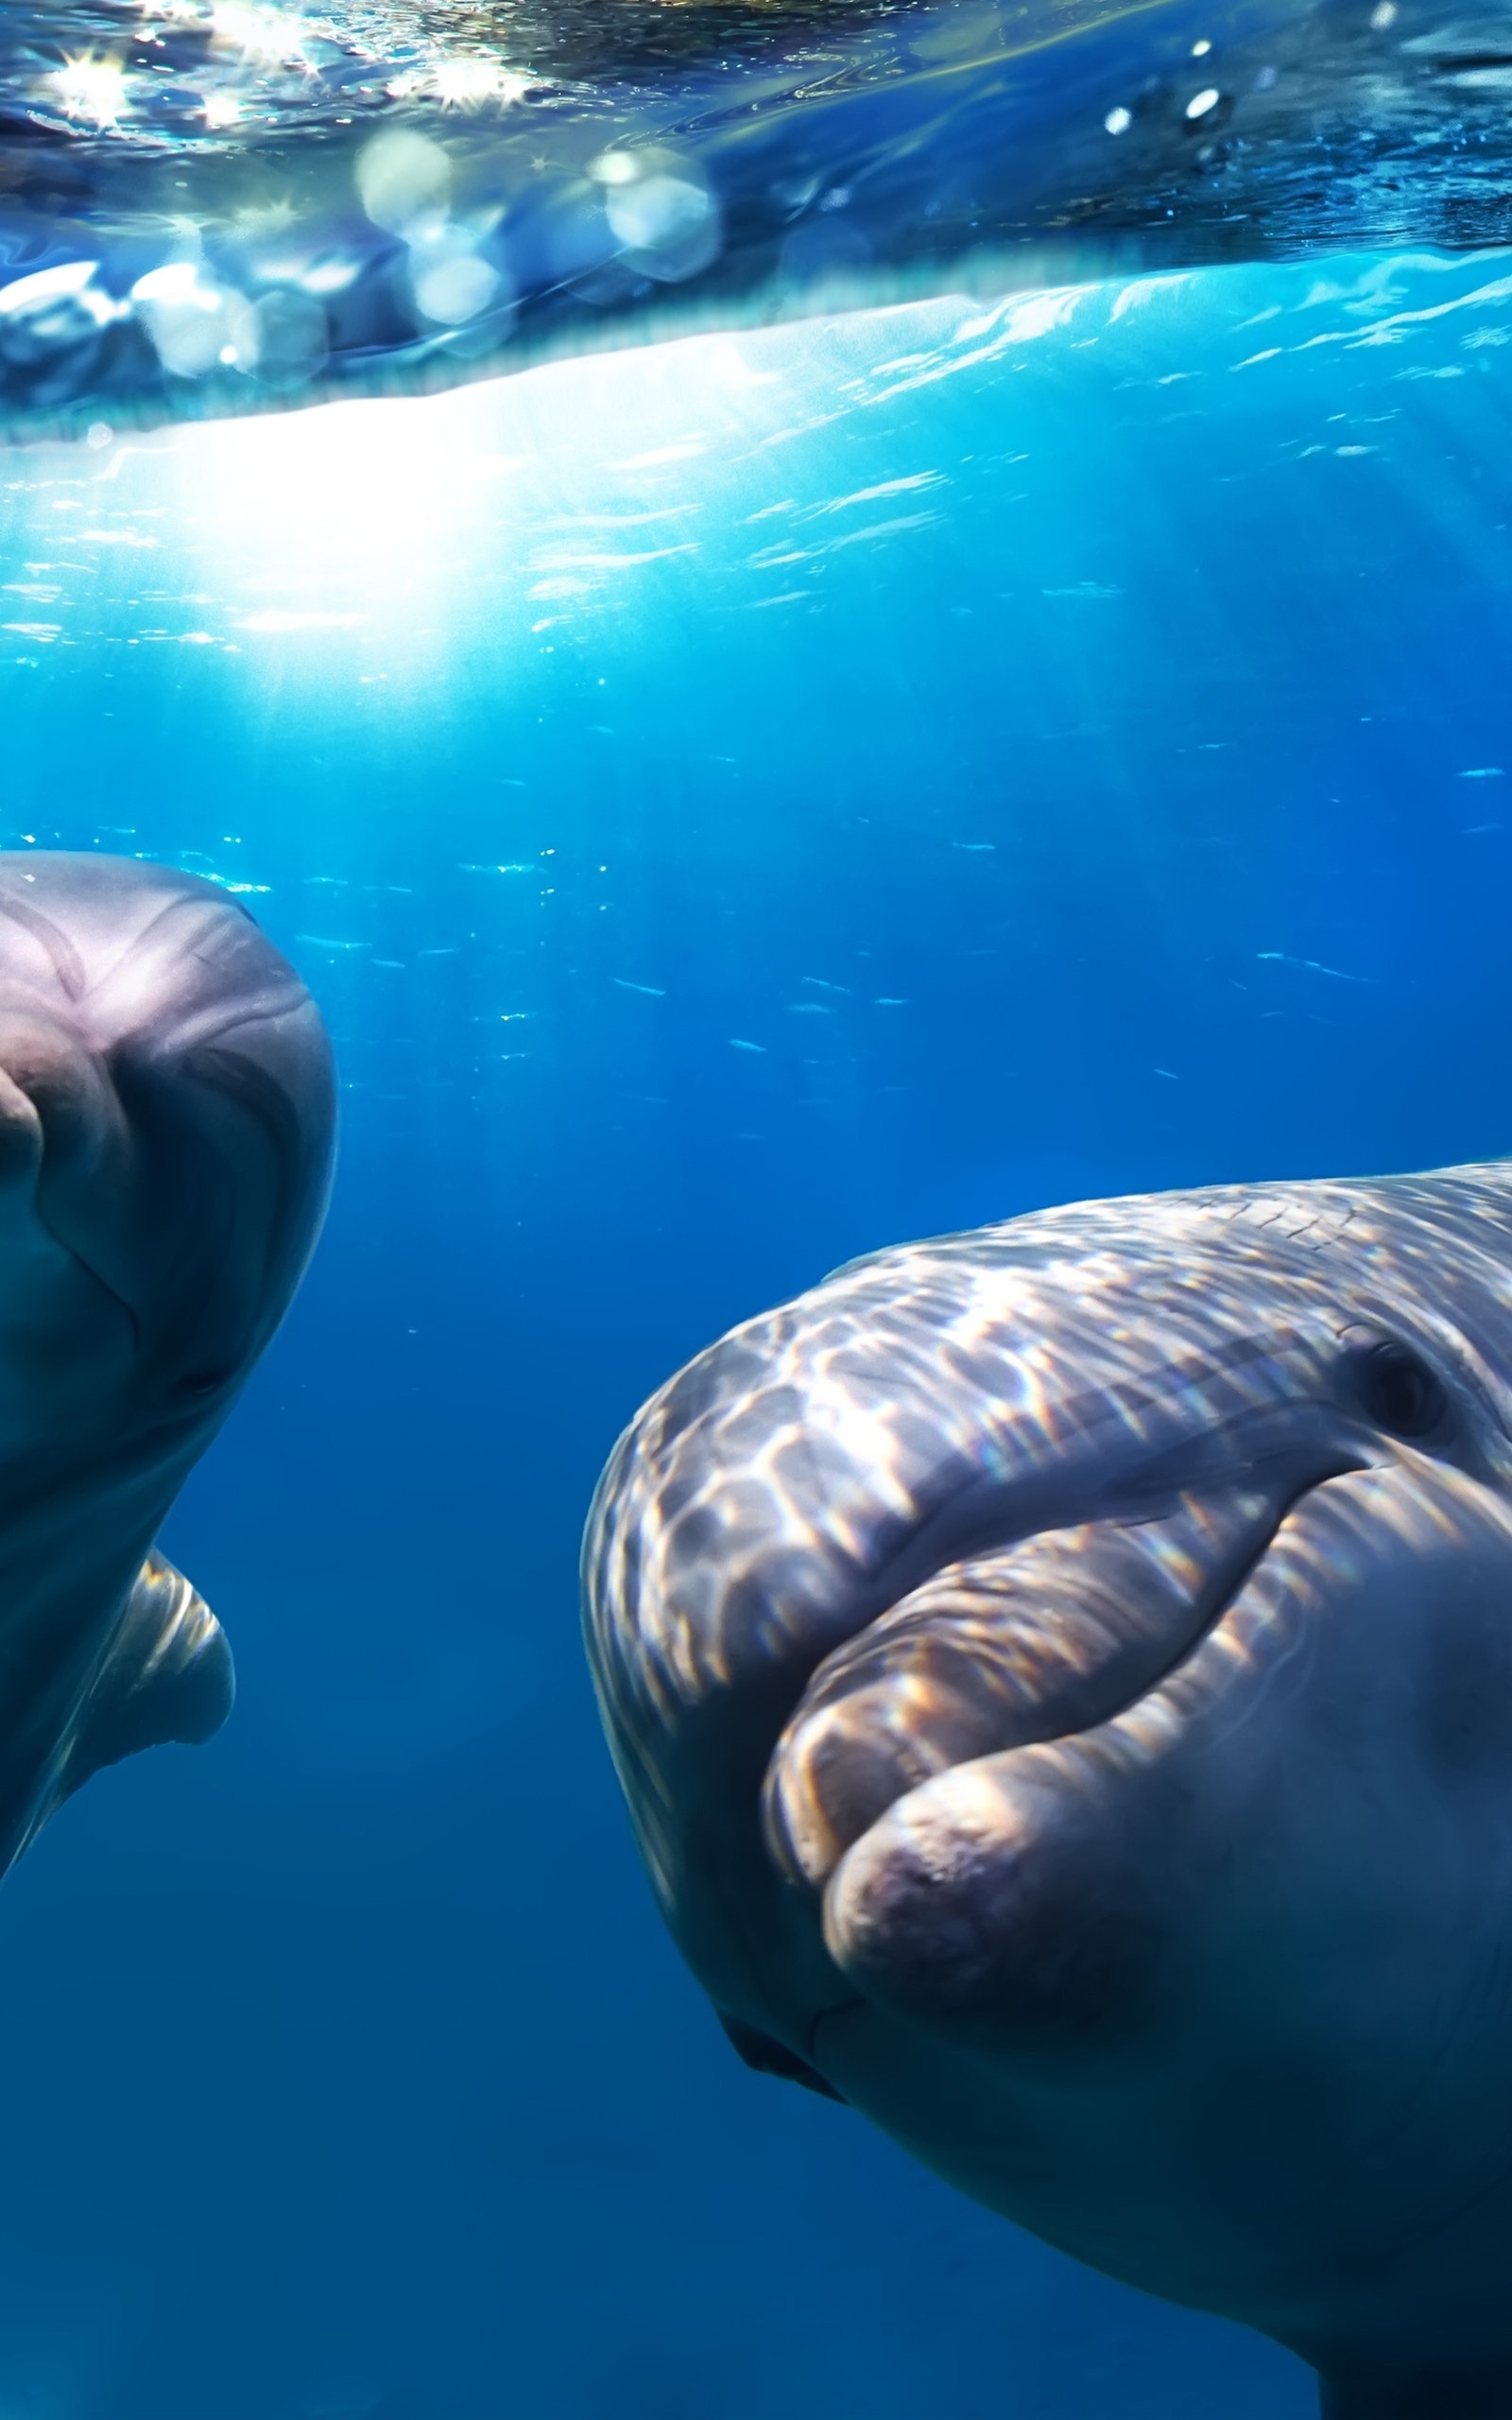 Картинка: Дельфины, плавники, улыбка, глаза, взгляд, вода, свет